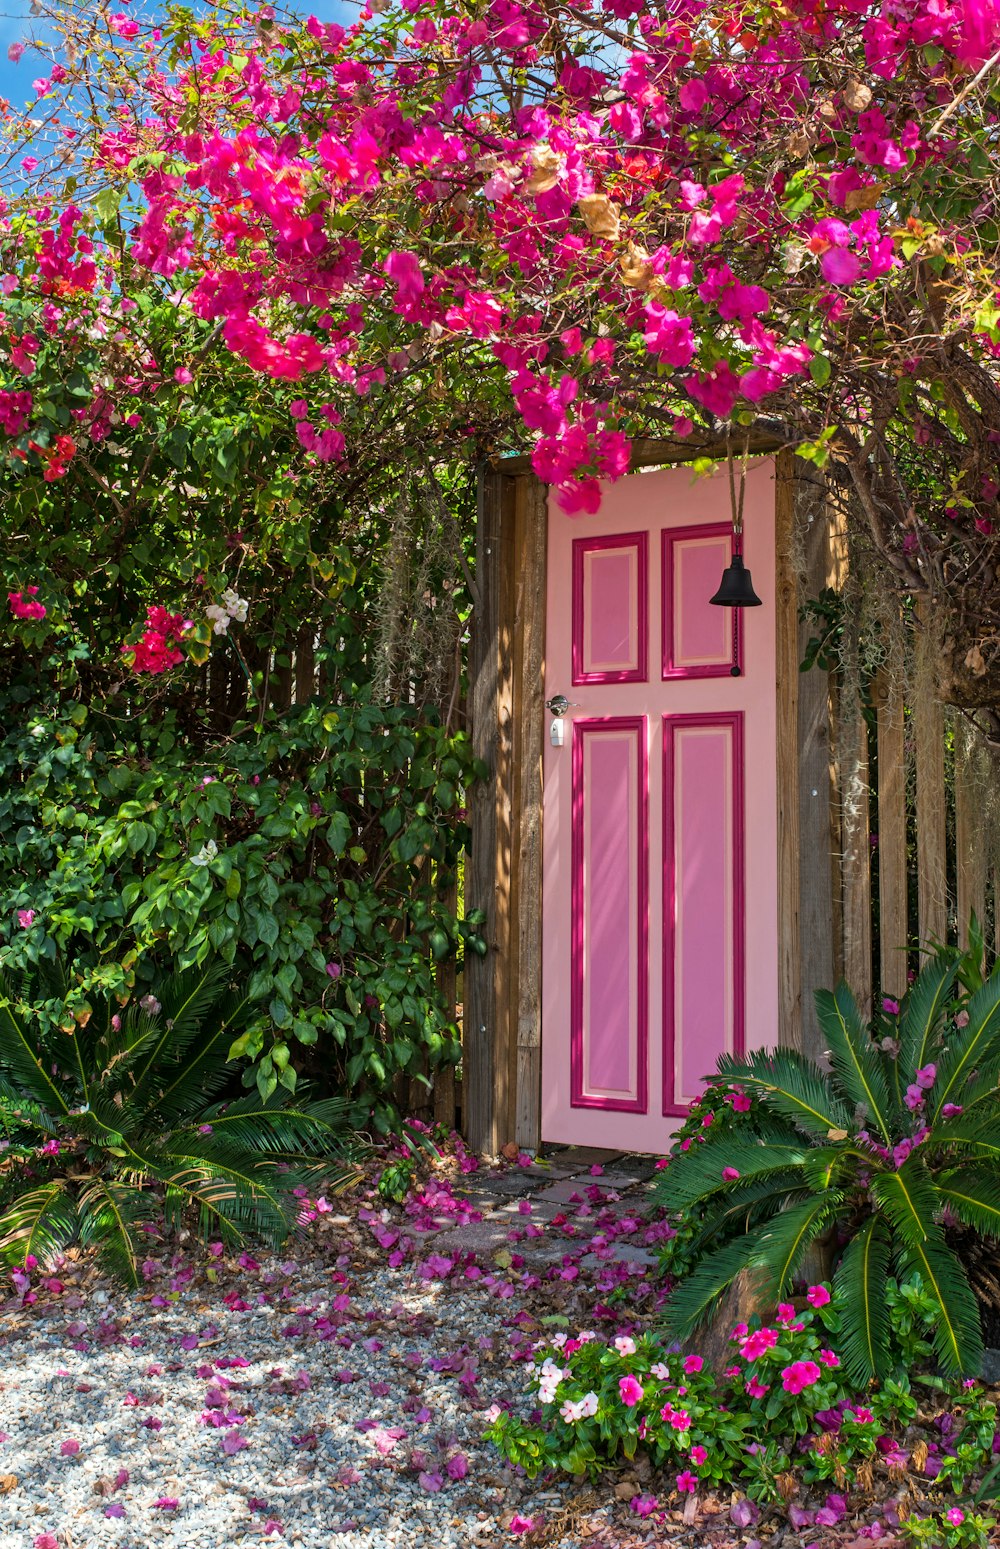 pink wooden door surround by flowers